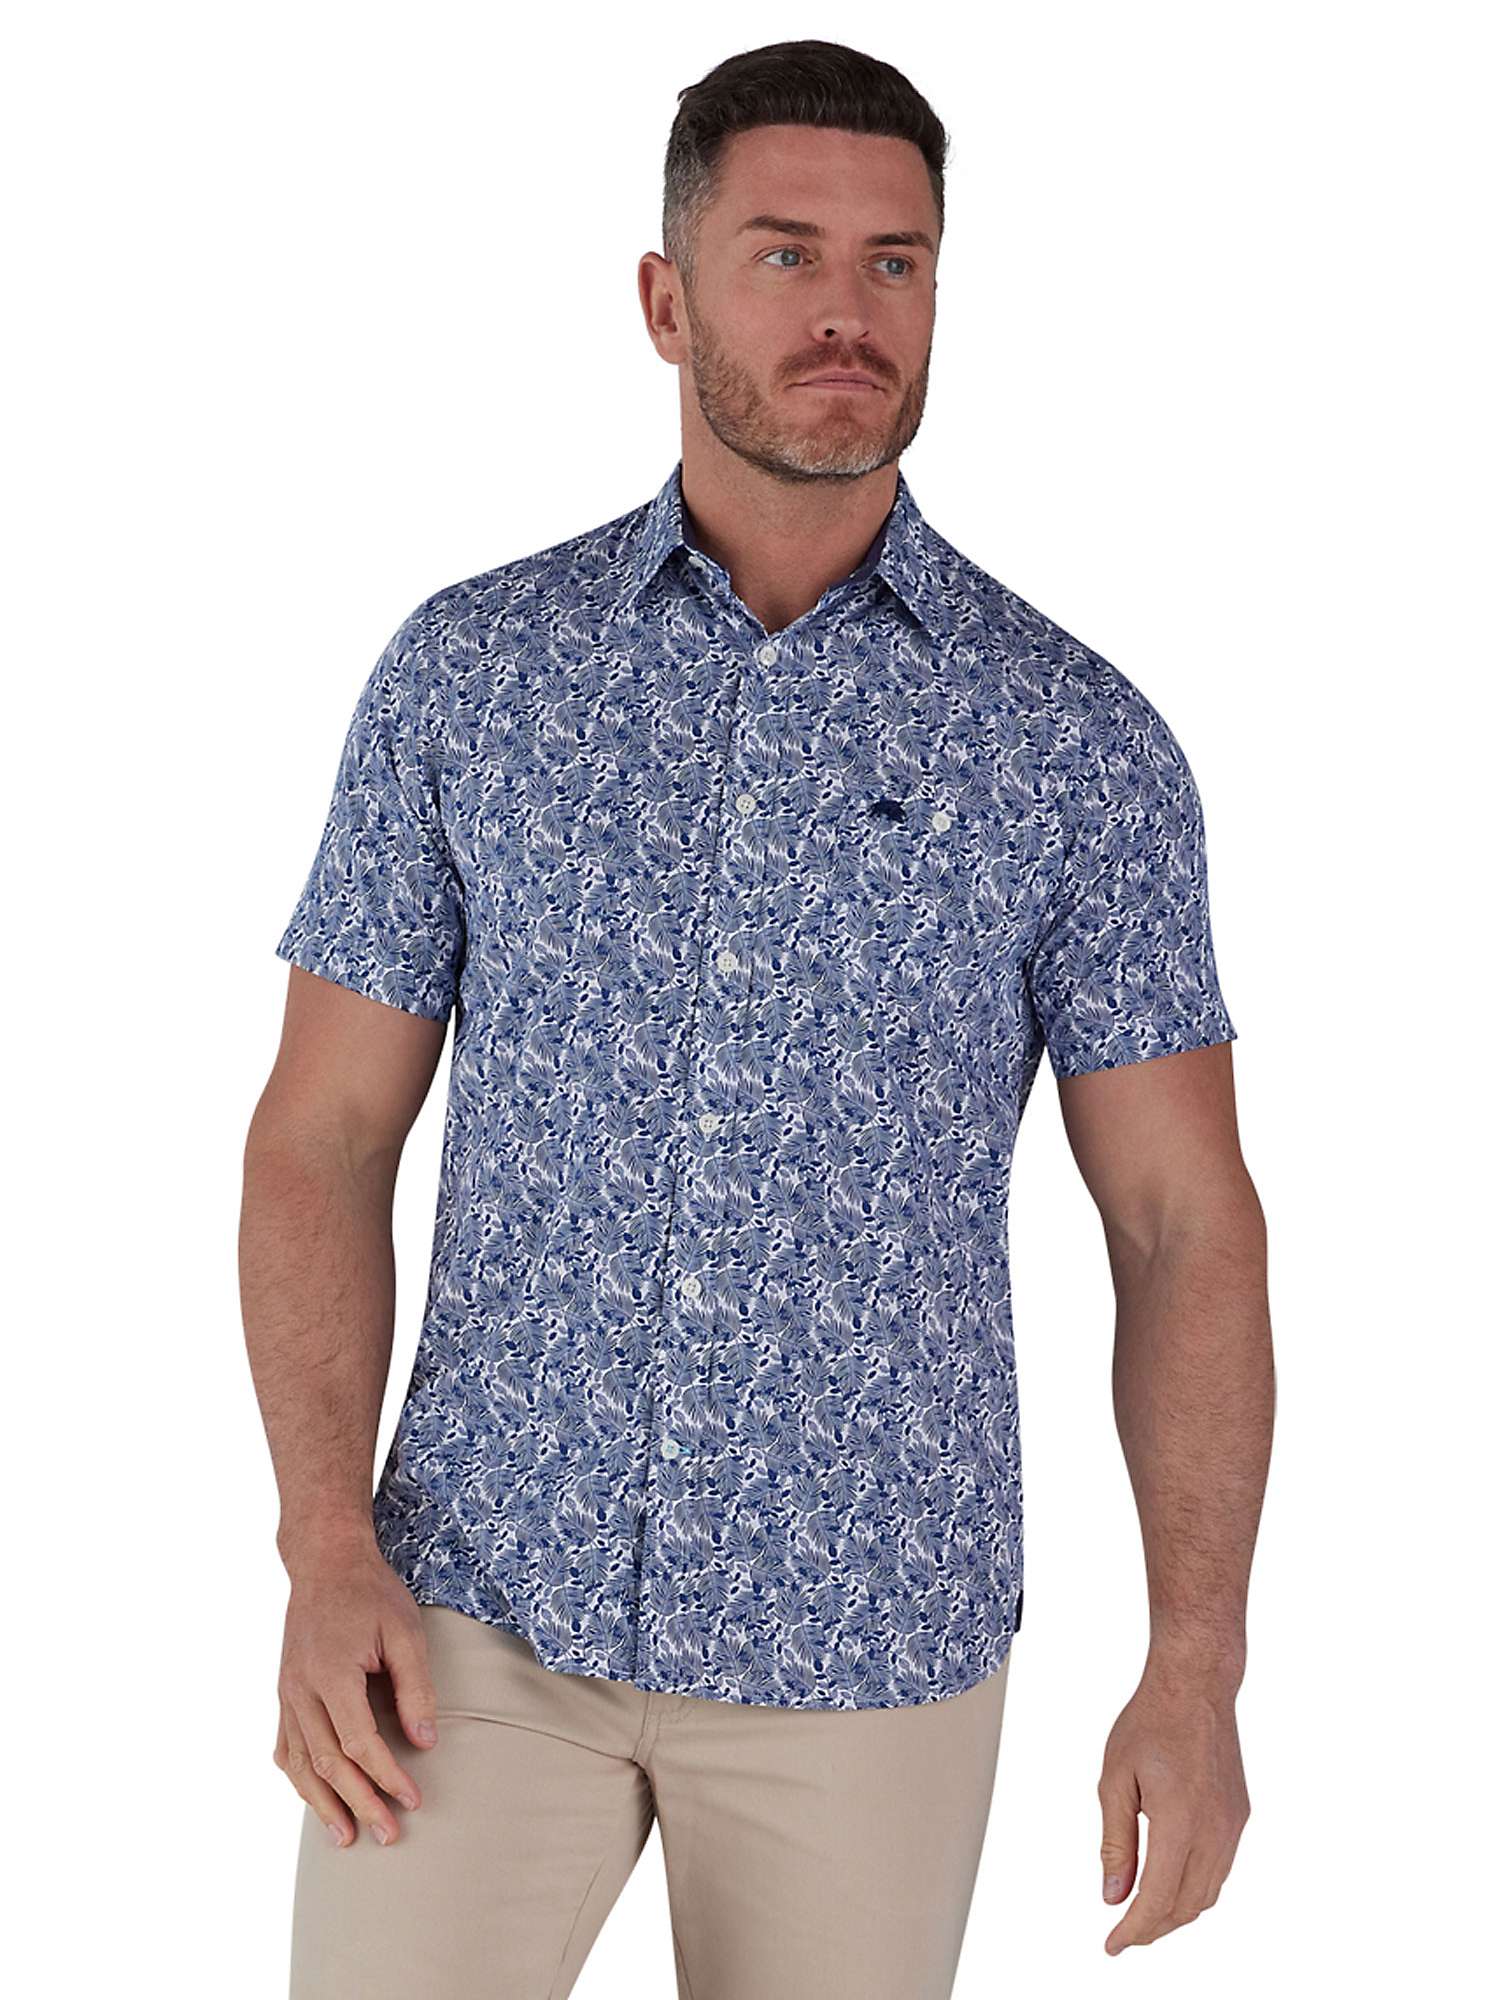 Buy Raging Bull Short Sleeve Leaf Print Poplin Shirt, Blue/White Online at johnlewis.com